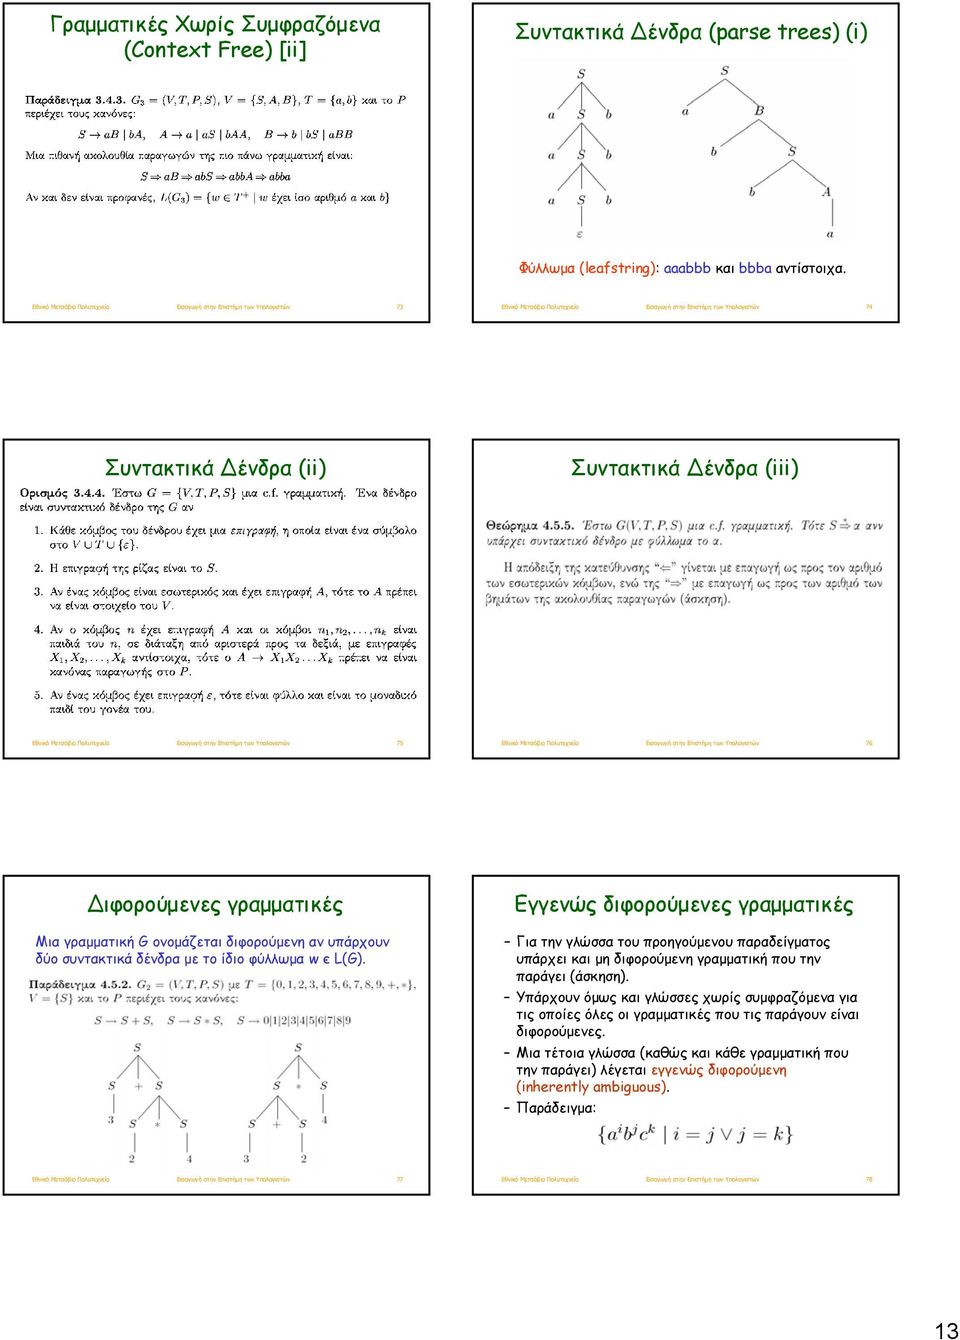 Υπολογιστών 76 ιφορούμενες γραμματικές Μια γραμματική G ονομάζεται διφορούμενη αν υπάρχουν δύο συντακτικά δένδρα με το ίδιο φύλλωμα w є L(G).